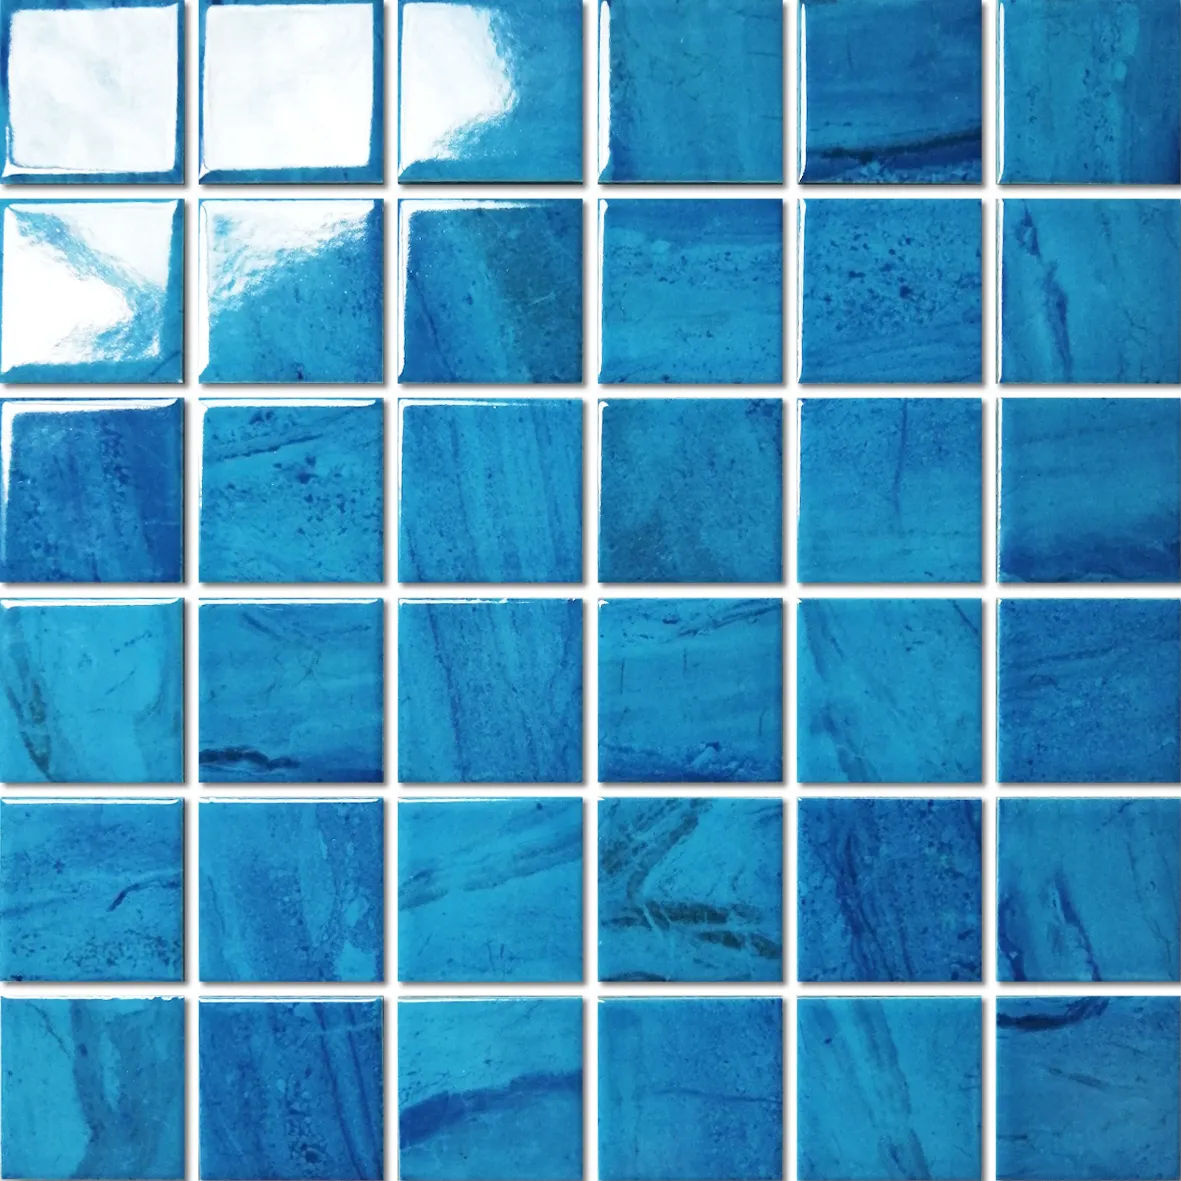 Hasin saf renk büyük boy toptan popüler mavi sırlı kare şekli yüzme havuzu için seramik mozaik karo